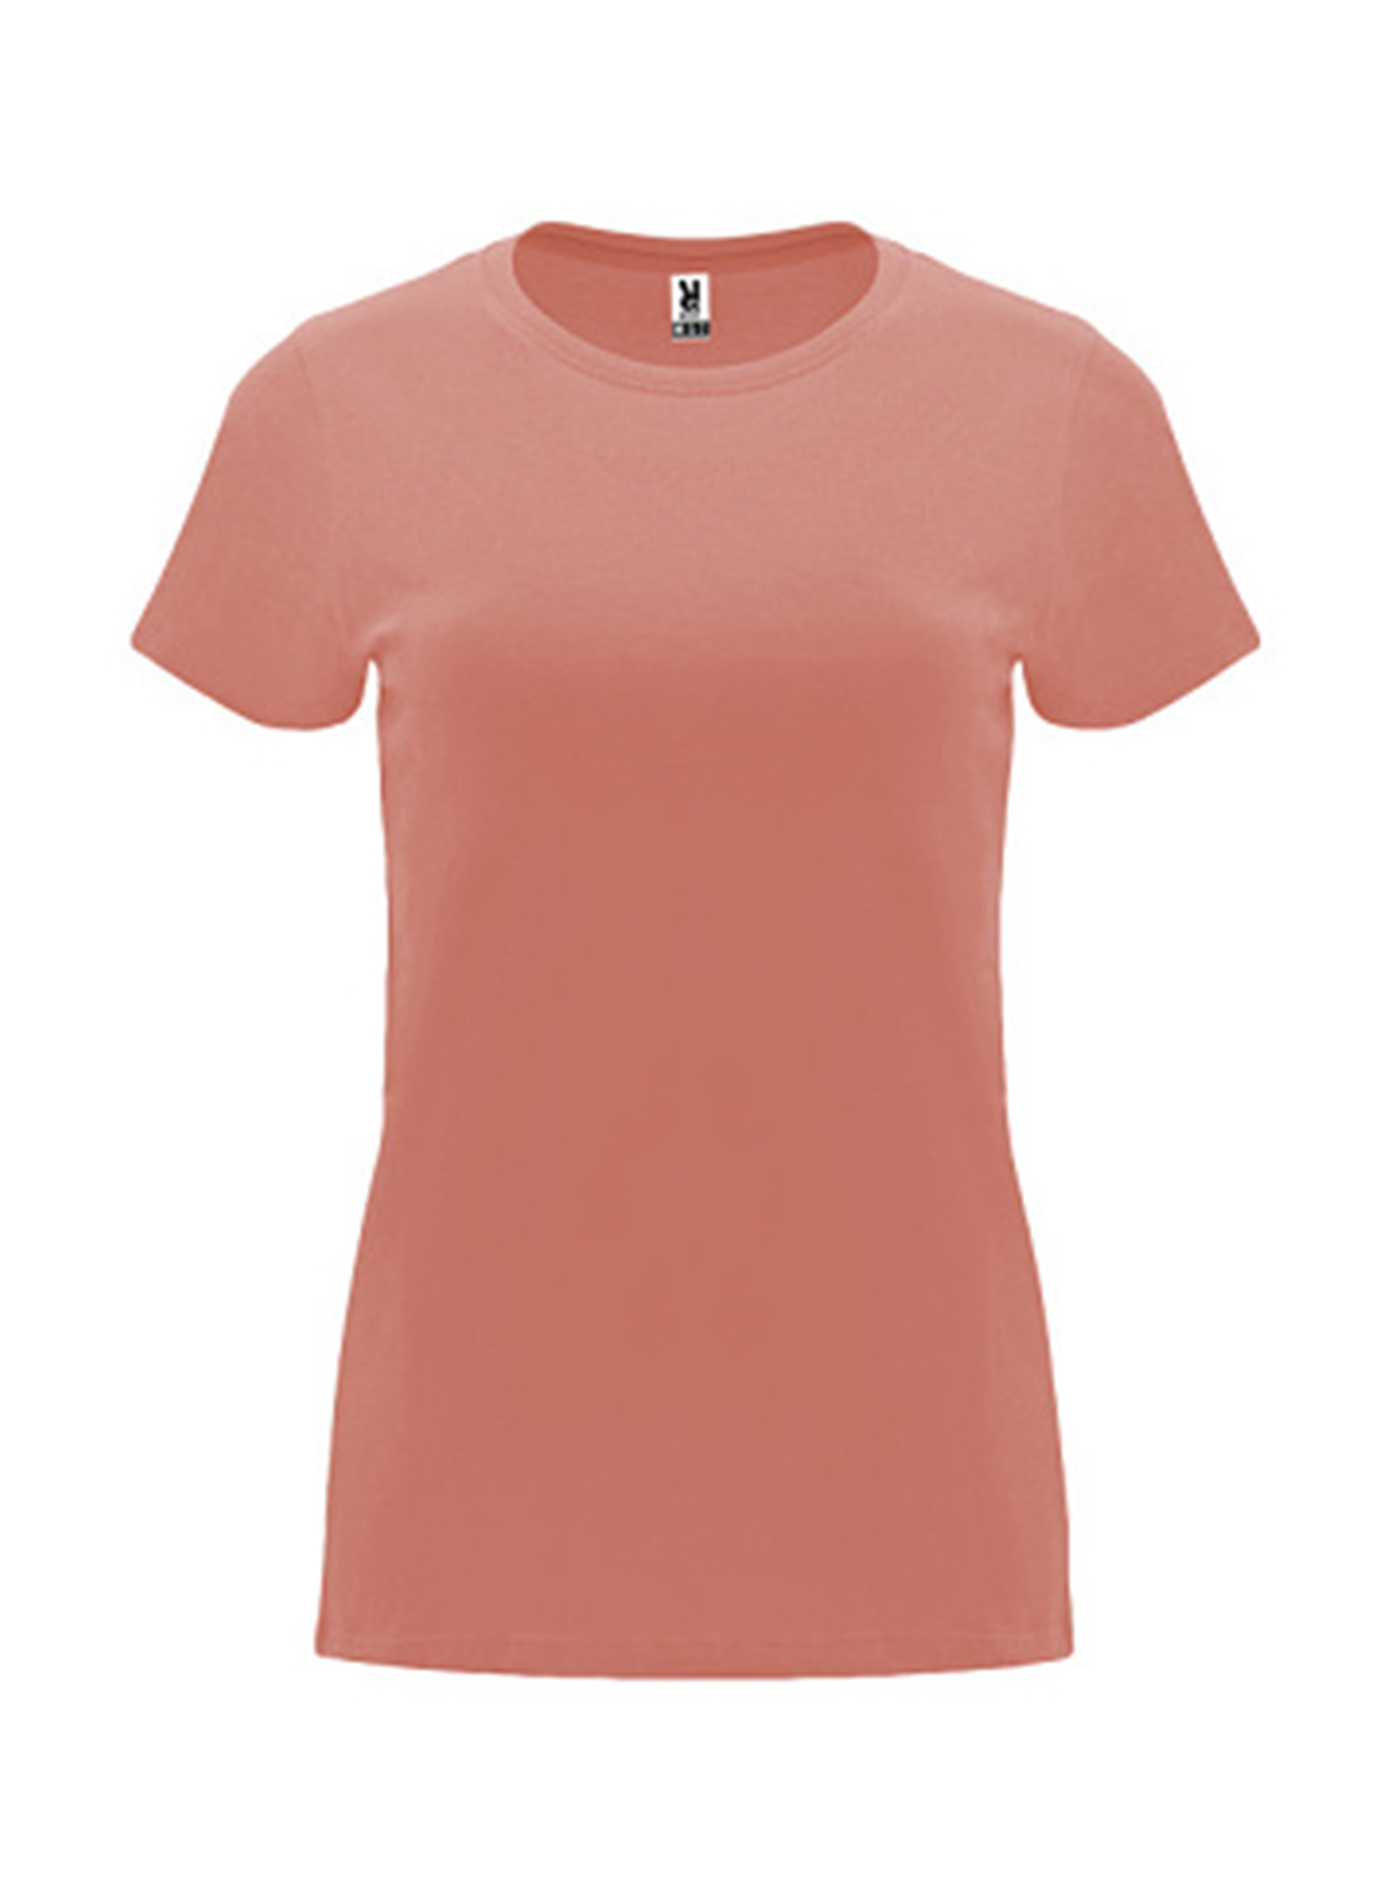 Dámské tričko Roly Capri - Elektrická oranžová S